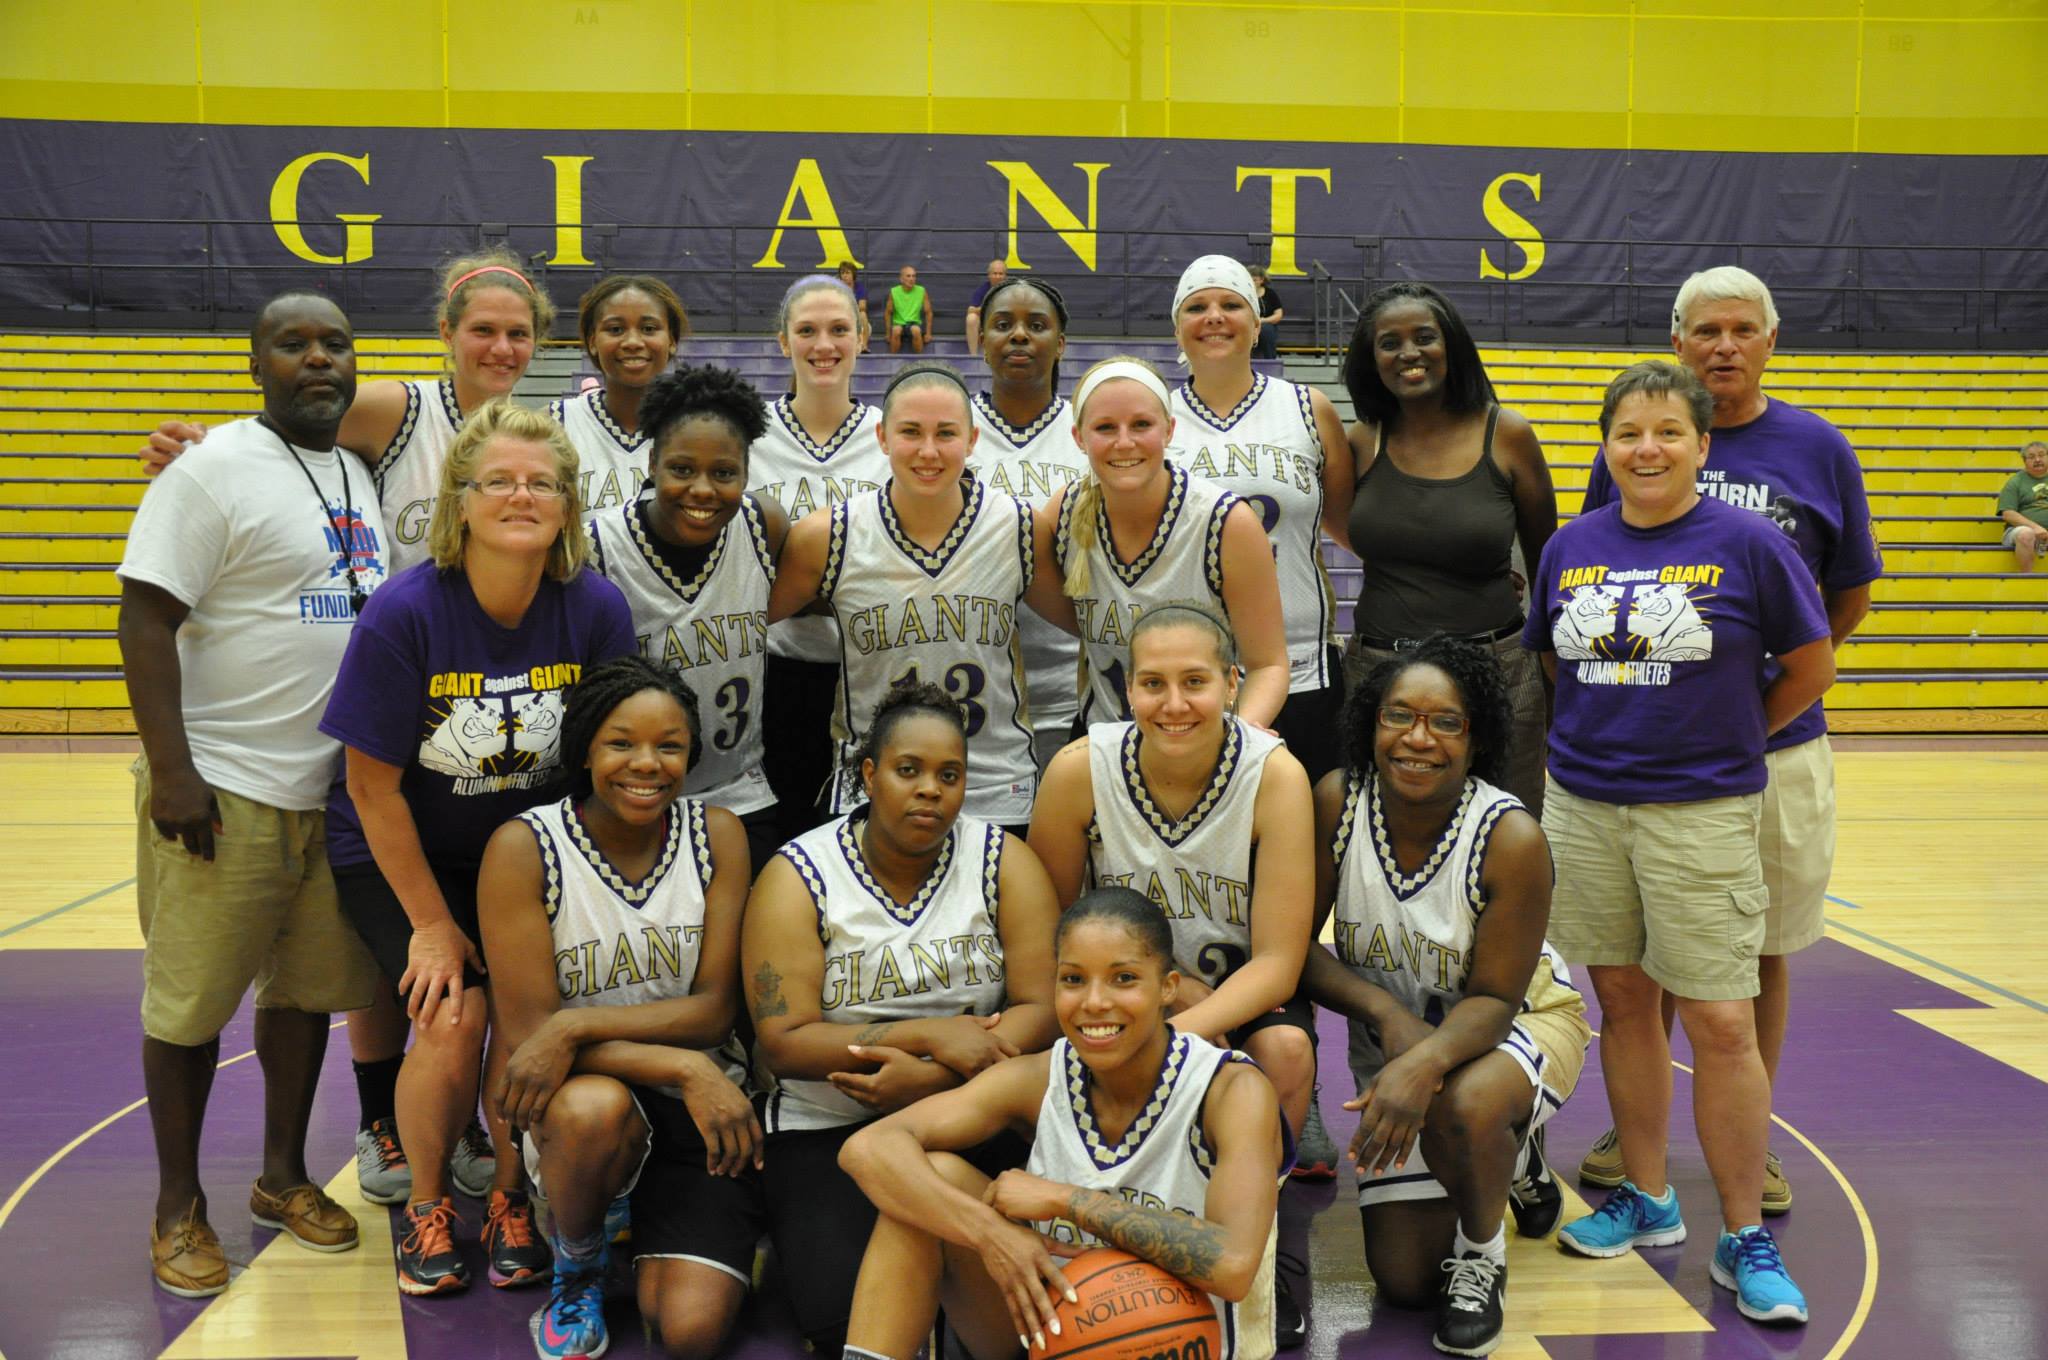 Giant Challenge 2015 girls basketball alumni team